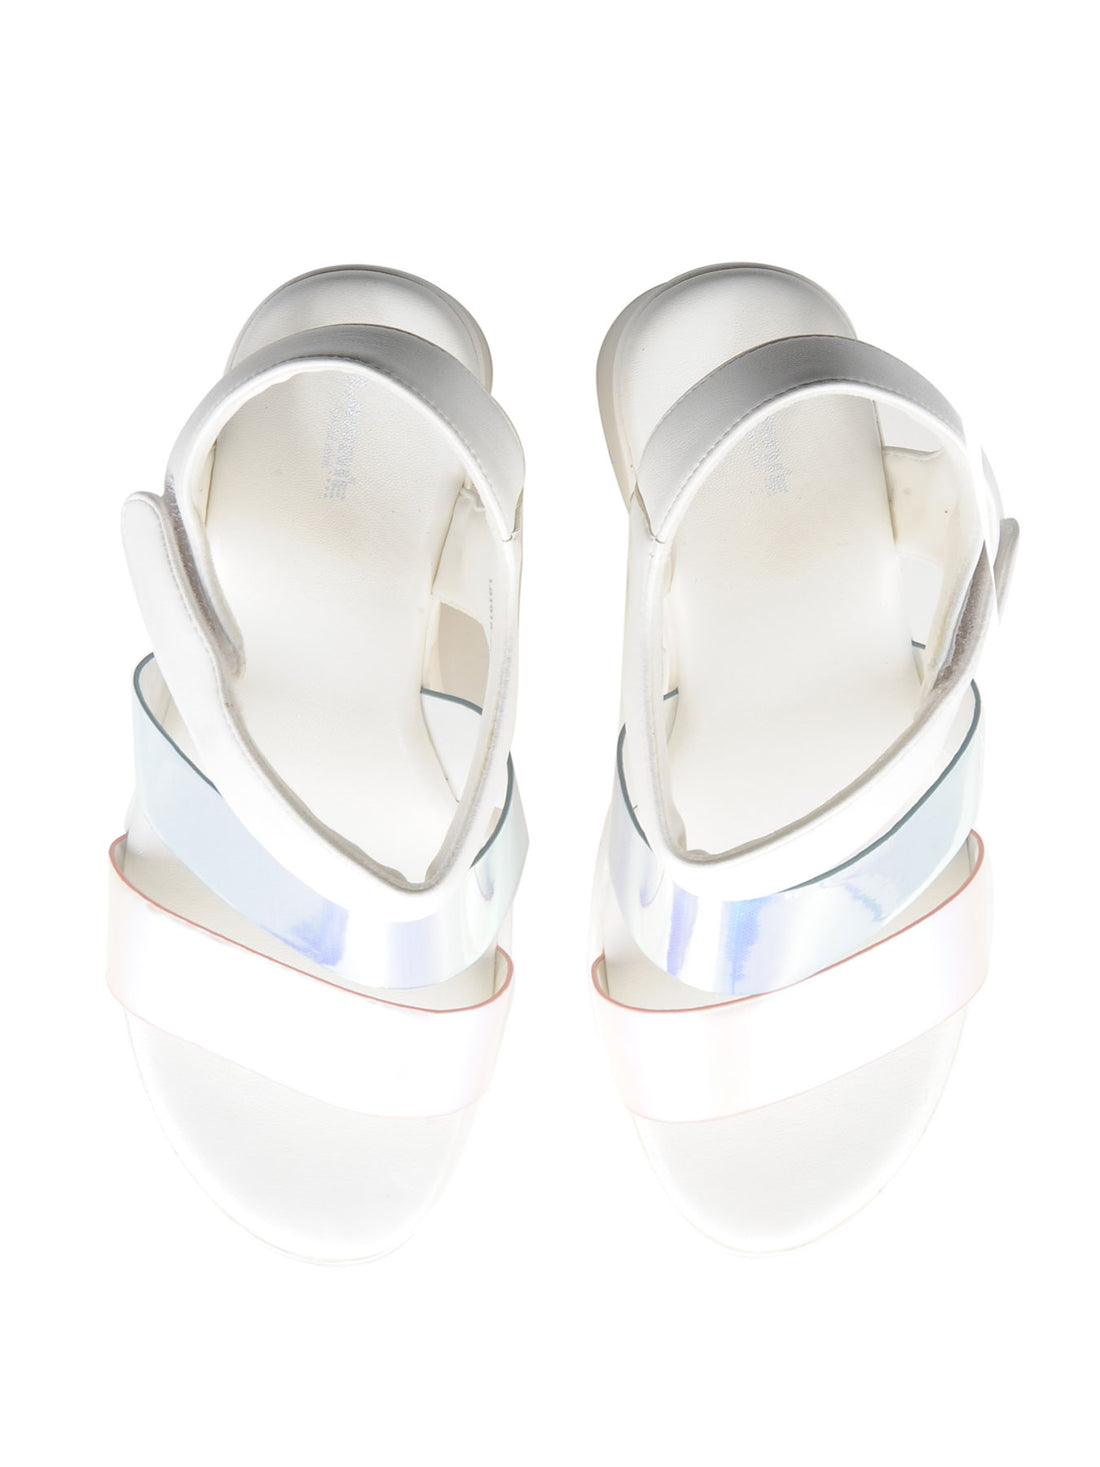 Larrie White Stylish Fashionable Wedges Sandals